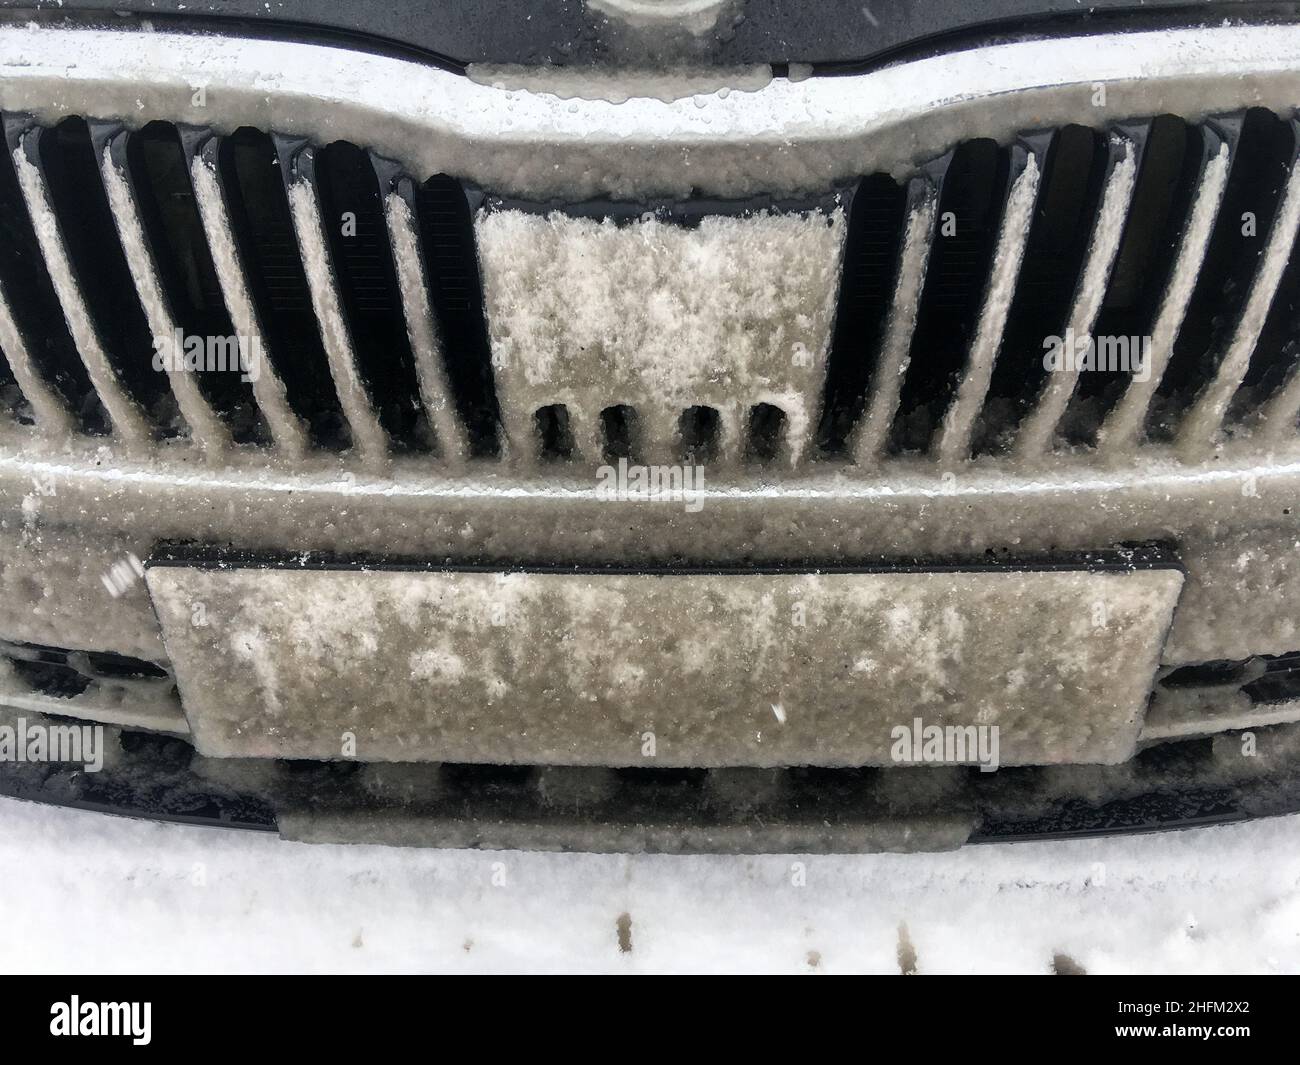 Le détail de la grille du radiateur de voiture entièrement recouvert de neige fondante.Le capteur radar est aveugle.Problème pour les systèmes modernes causé par la météo. Banque D'Images